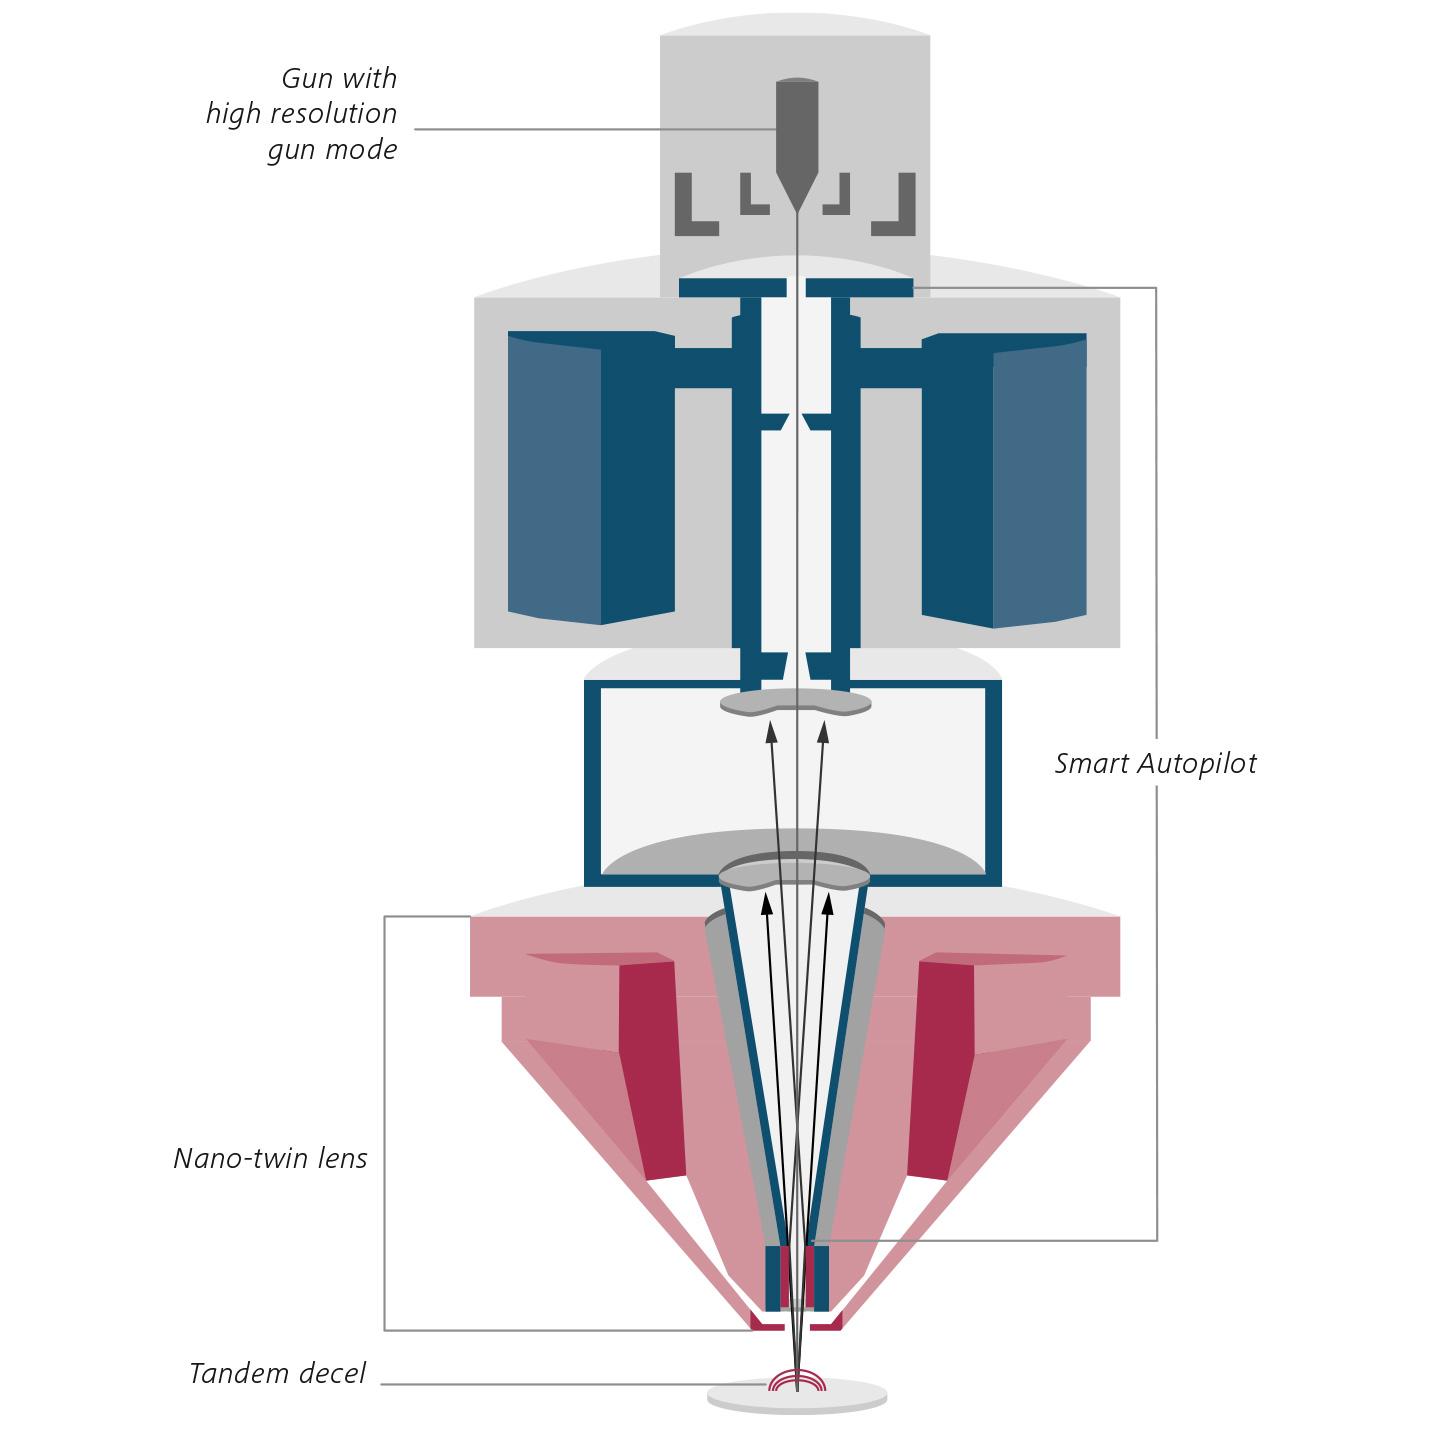 Gemini 3镜筒的全新光学设计。GeminiSEM 560的截面示意图。Nano-twin物镜（红色），Smart Autopilot（蓝色）。